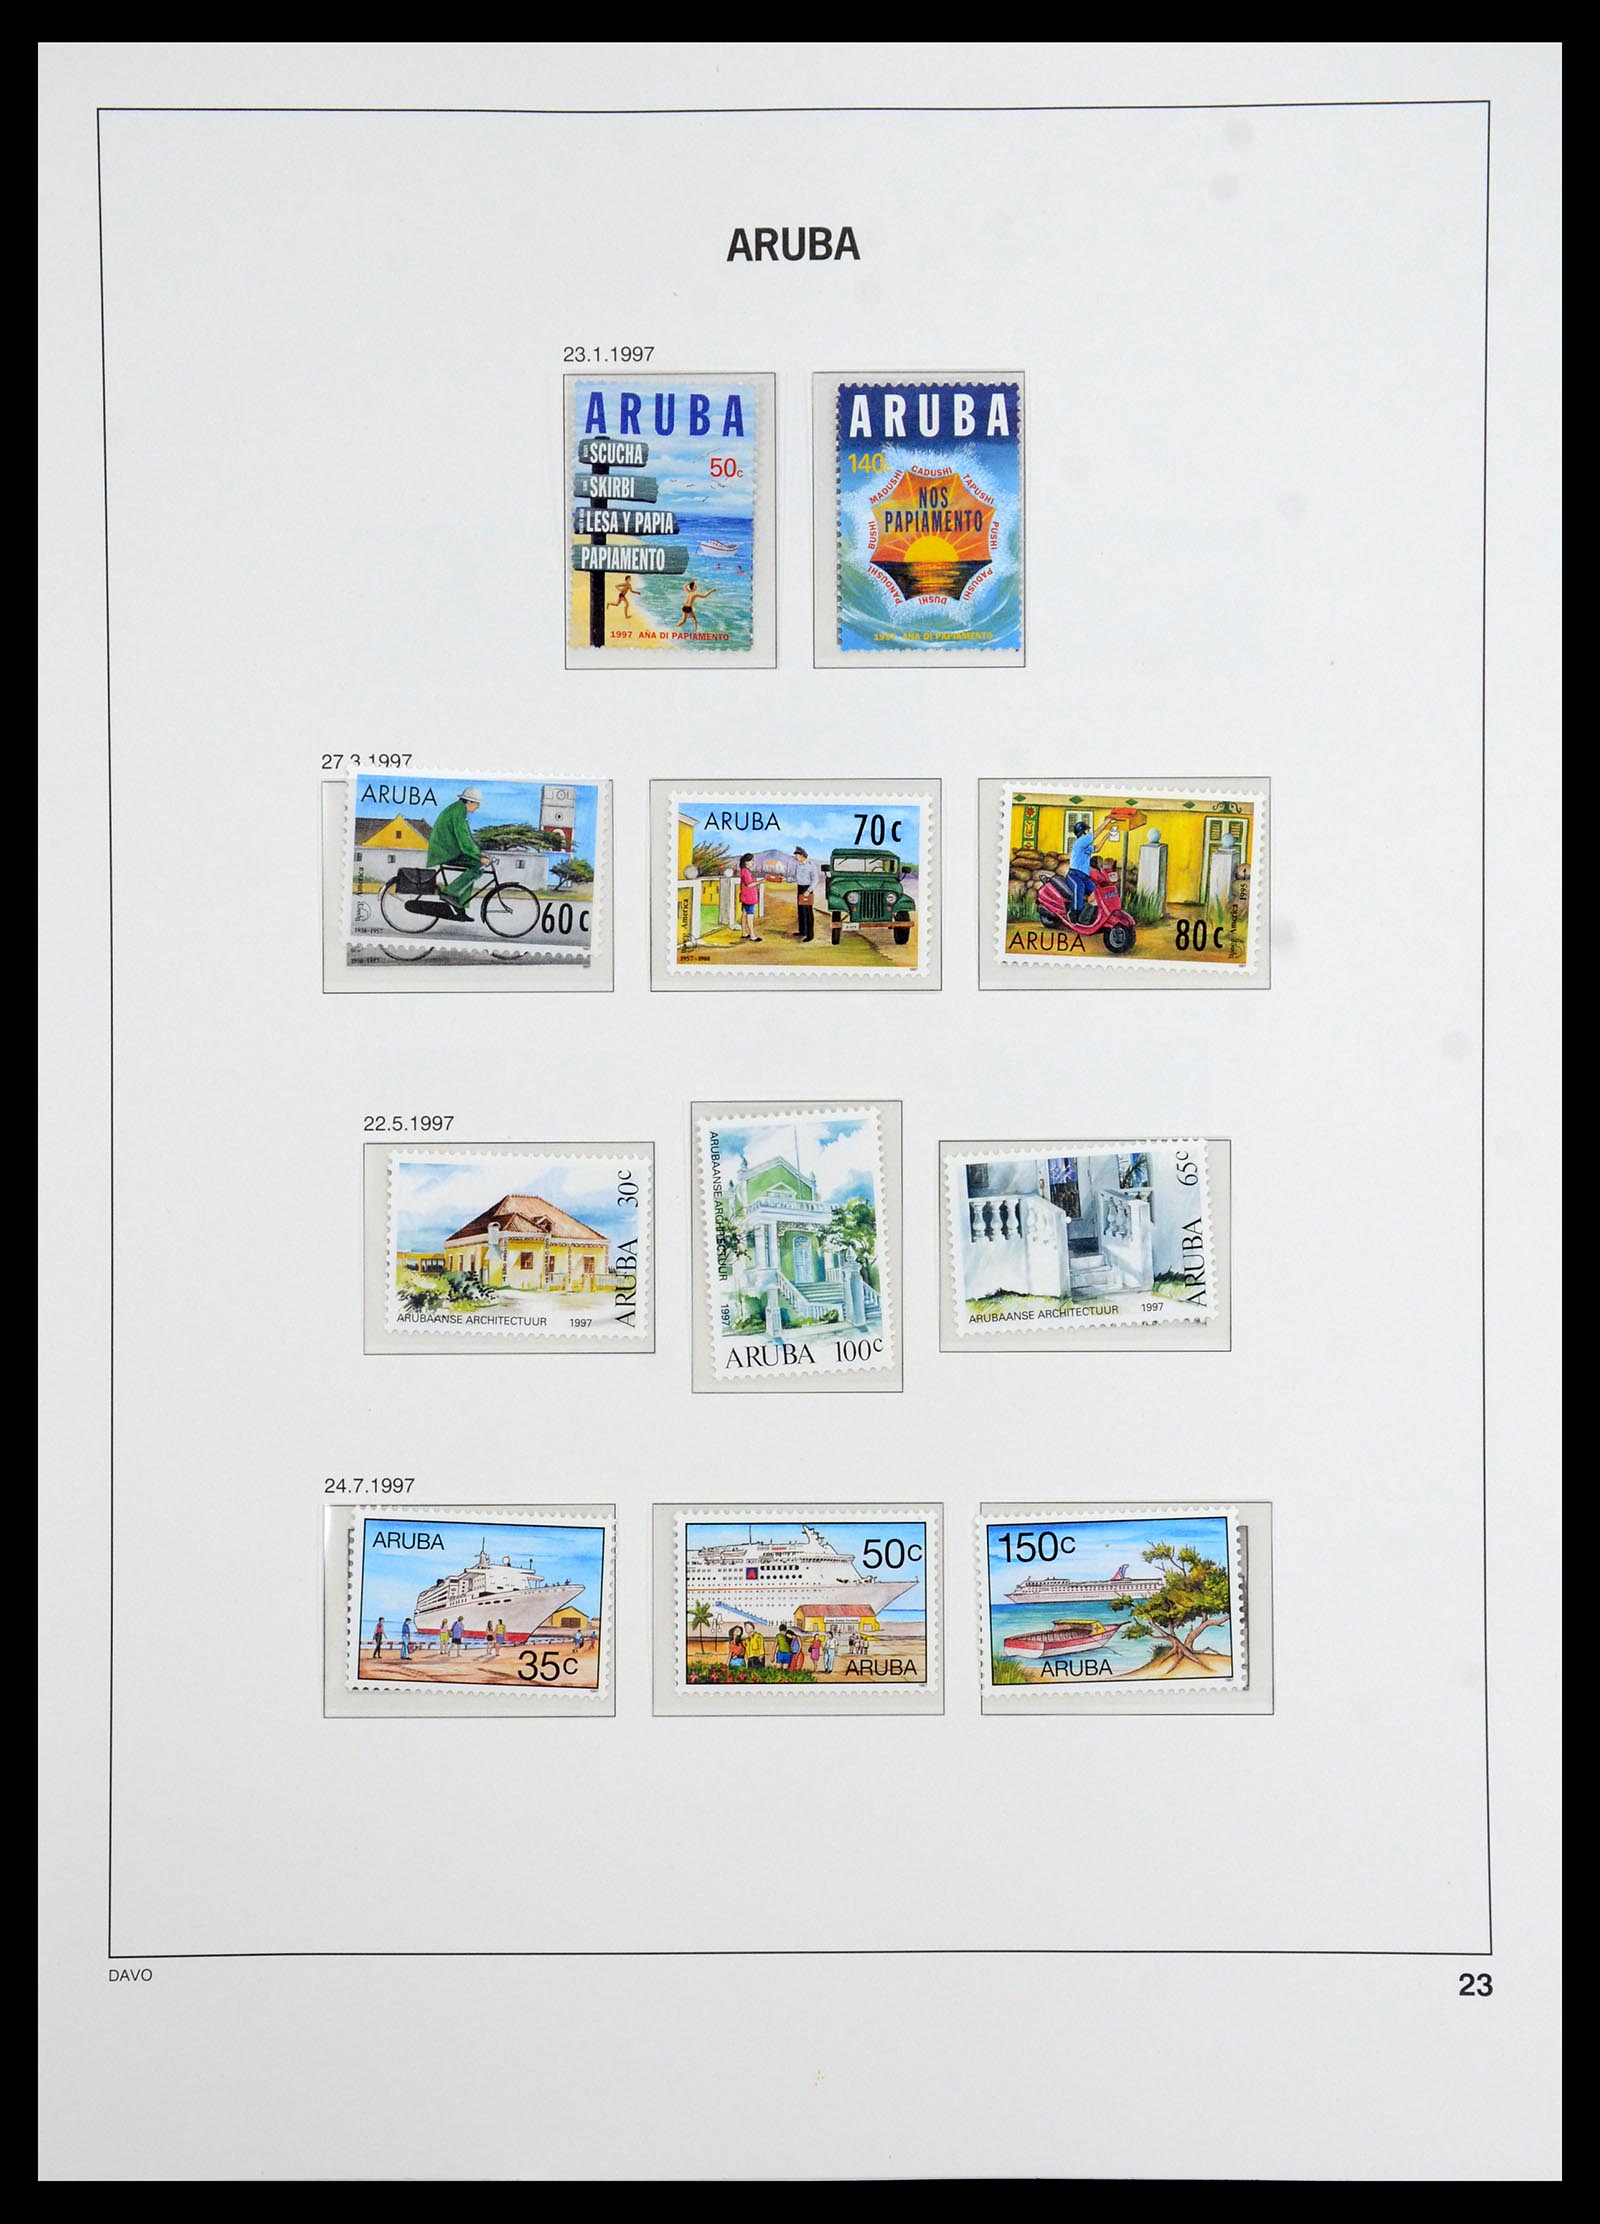 36369 023 - Stamp collection 36369 Aruba 1986-2009.